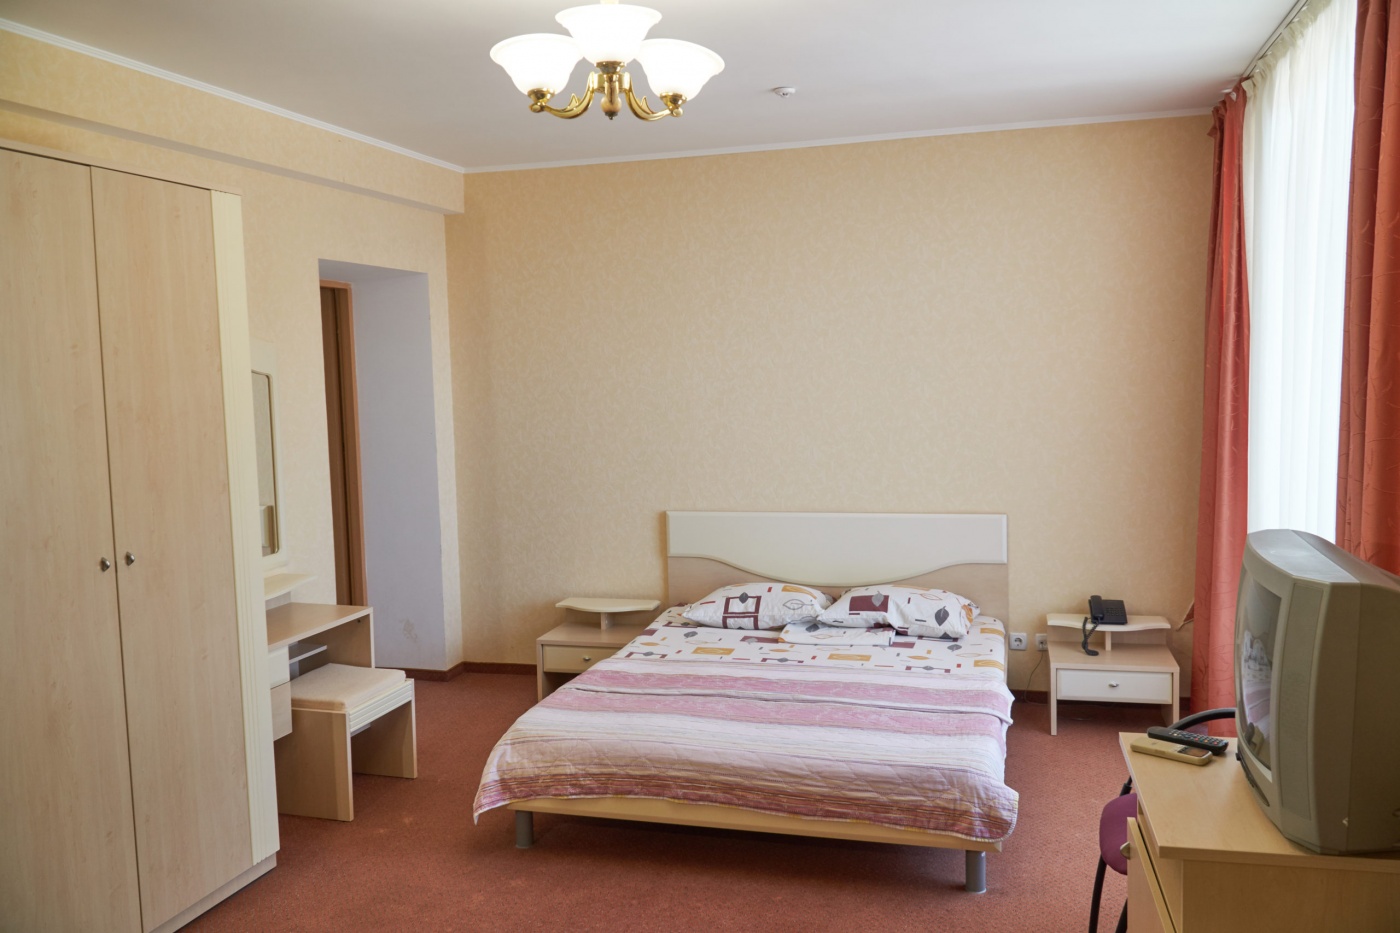  Отель «Сказка» Республика Крым Стандарт Улучшенный 2-местный, фото 1